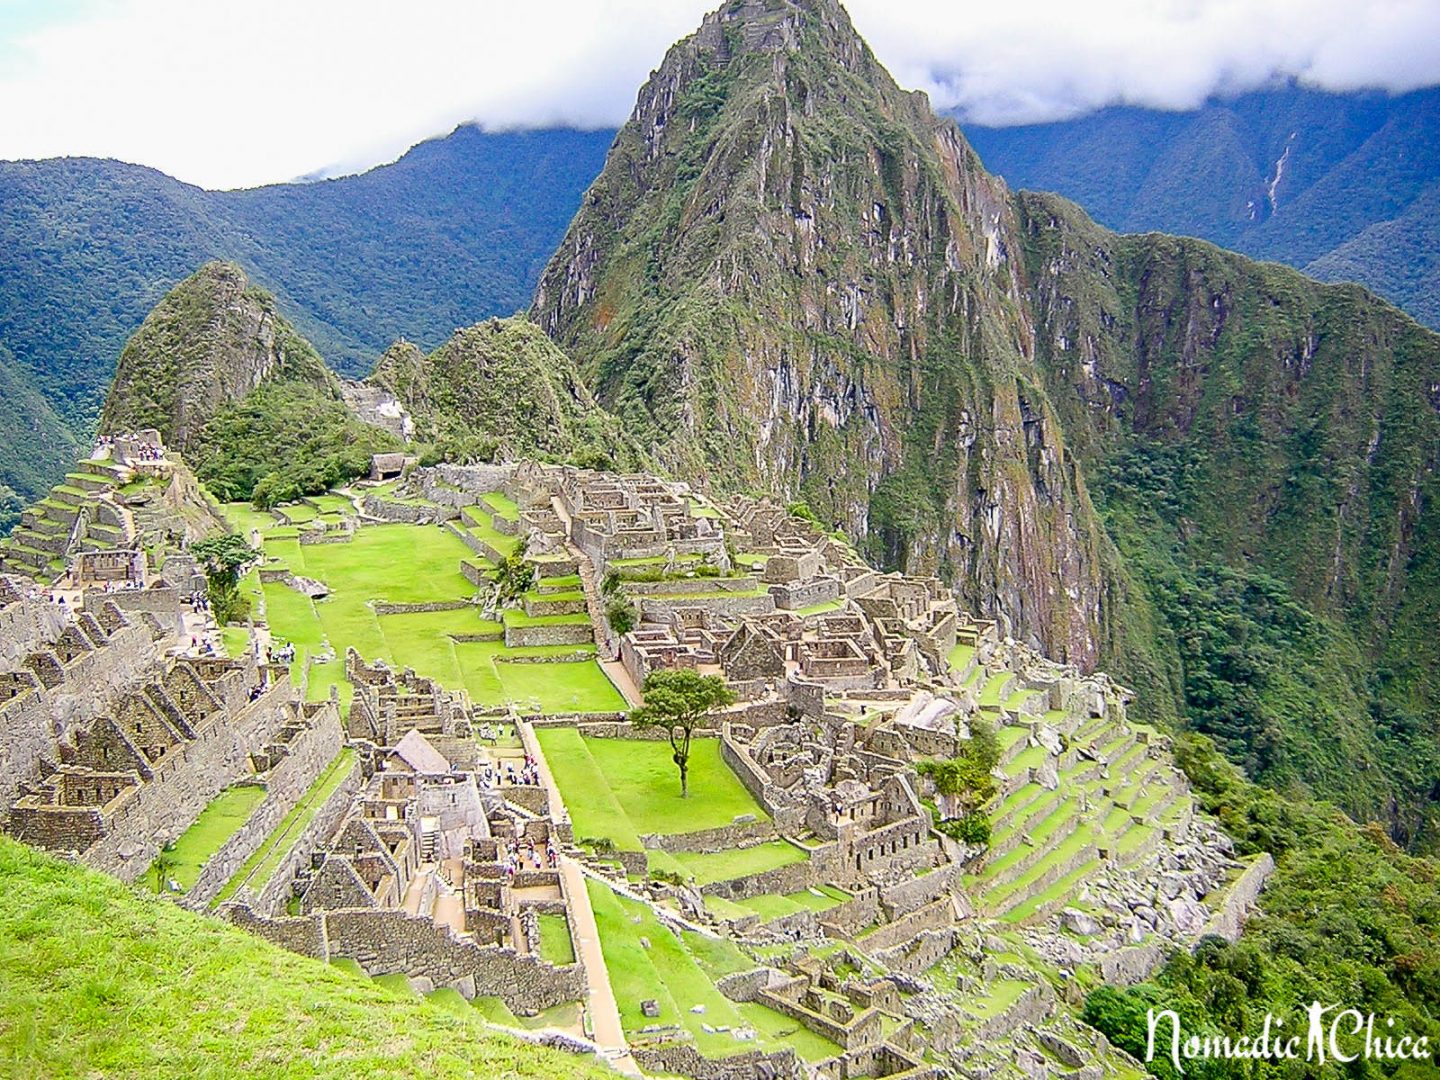 PERU The alternate route to Machu Picchu